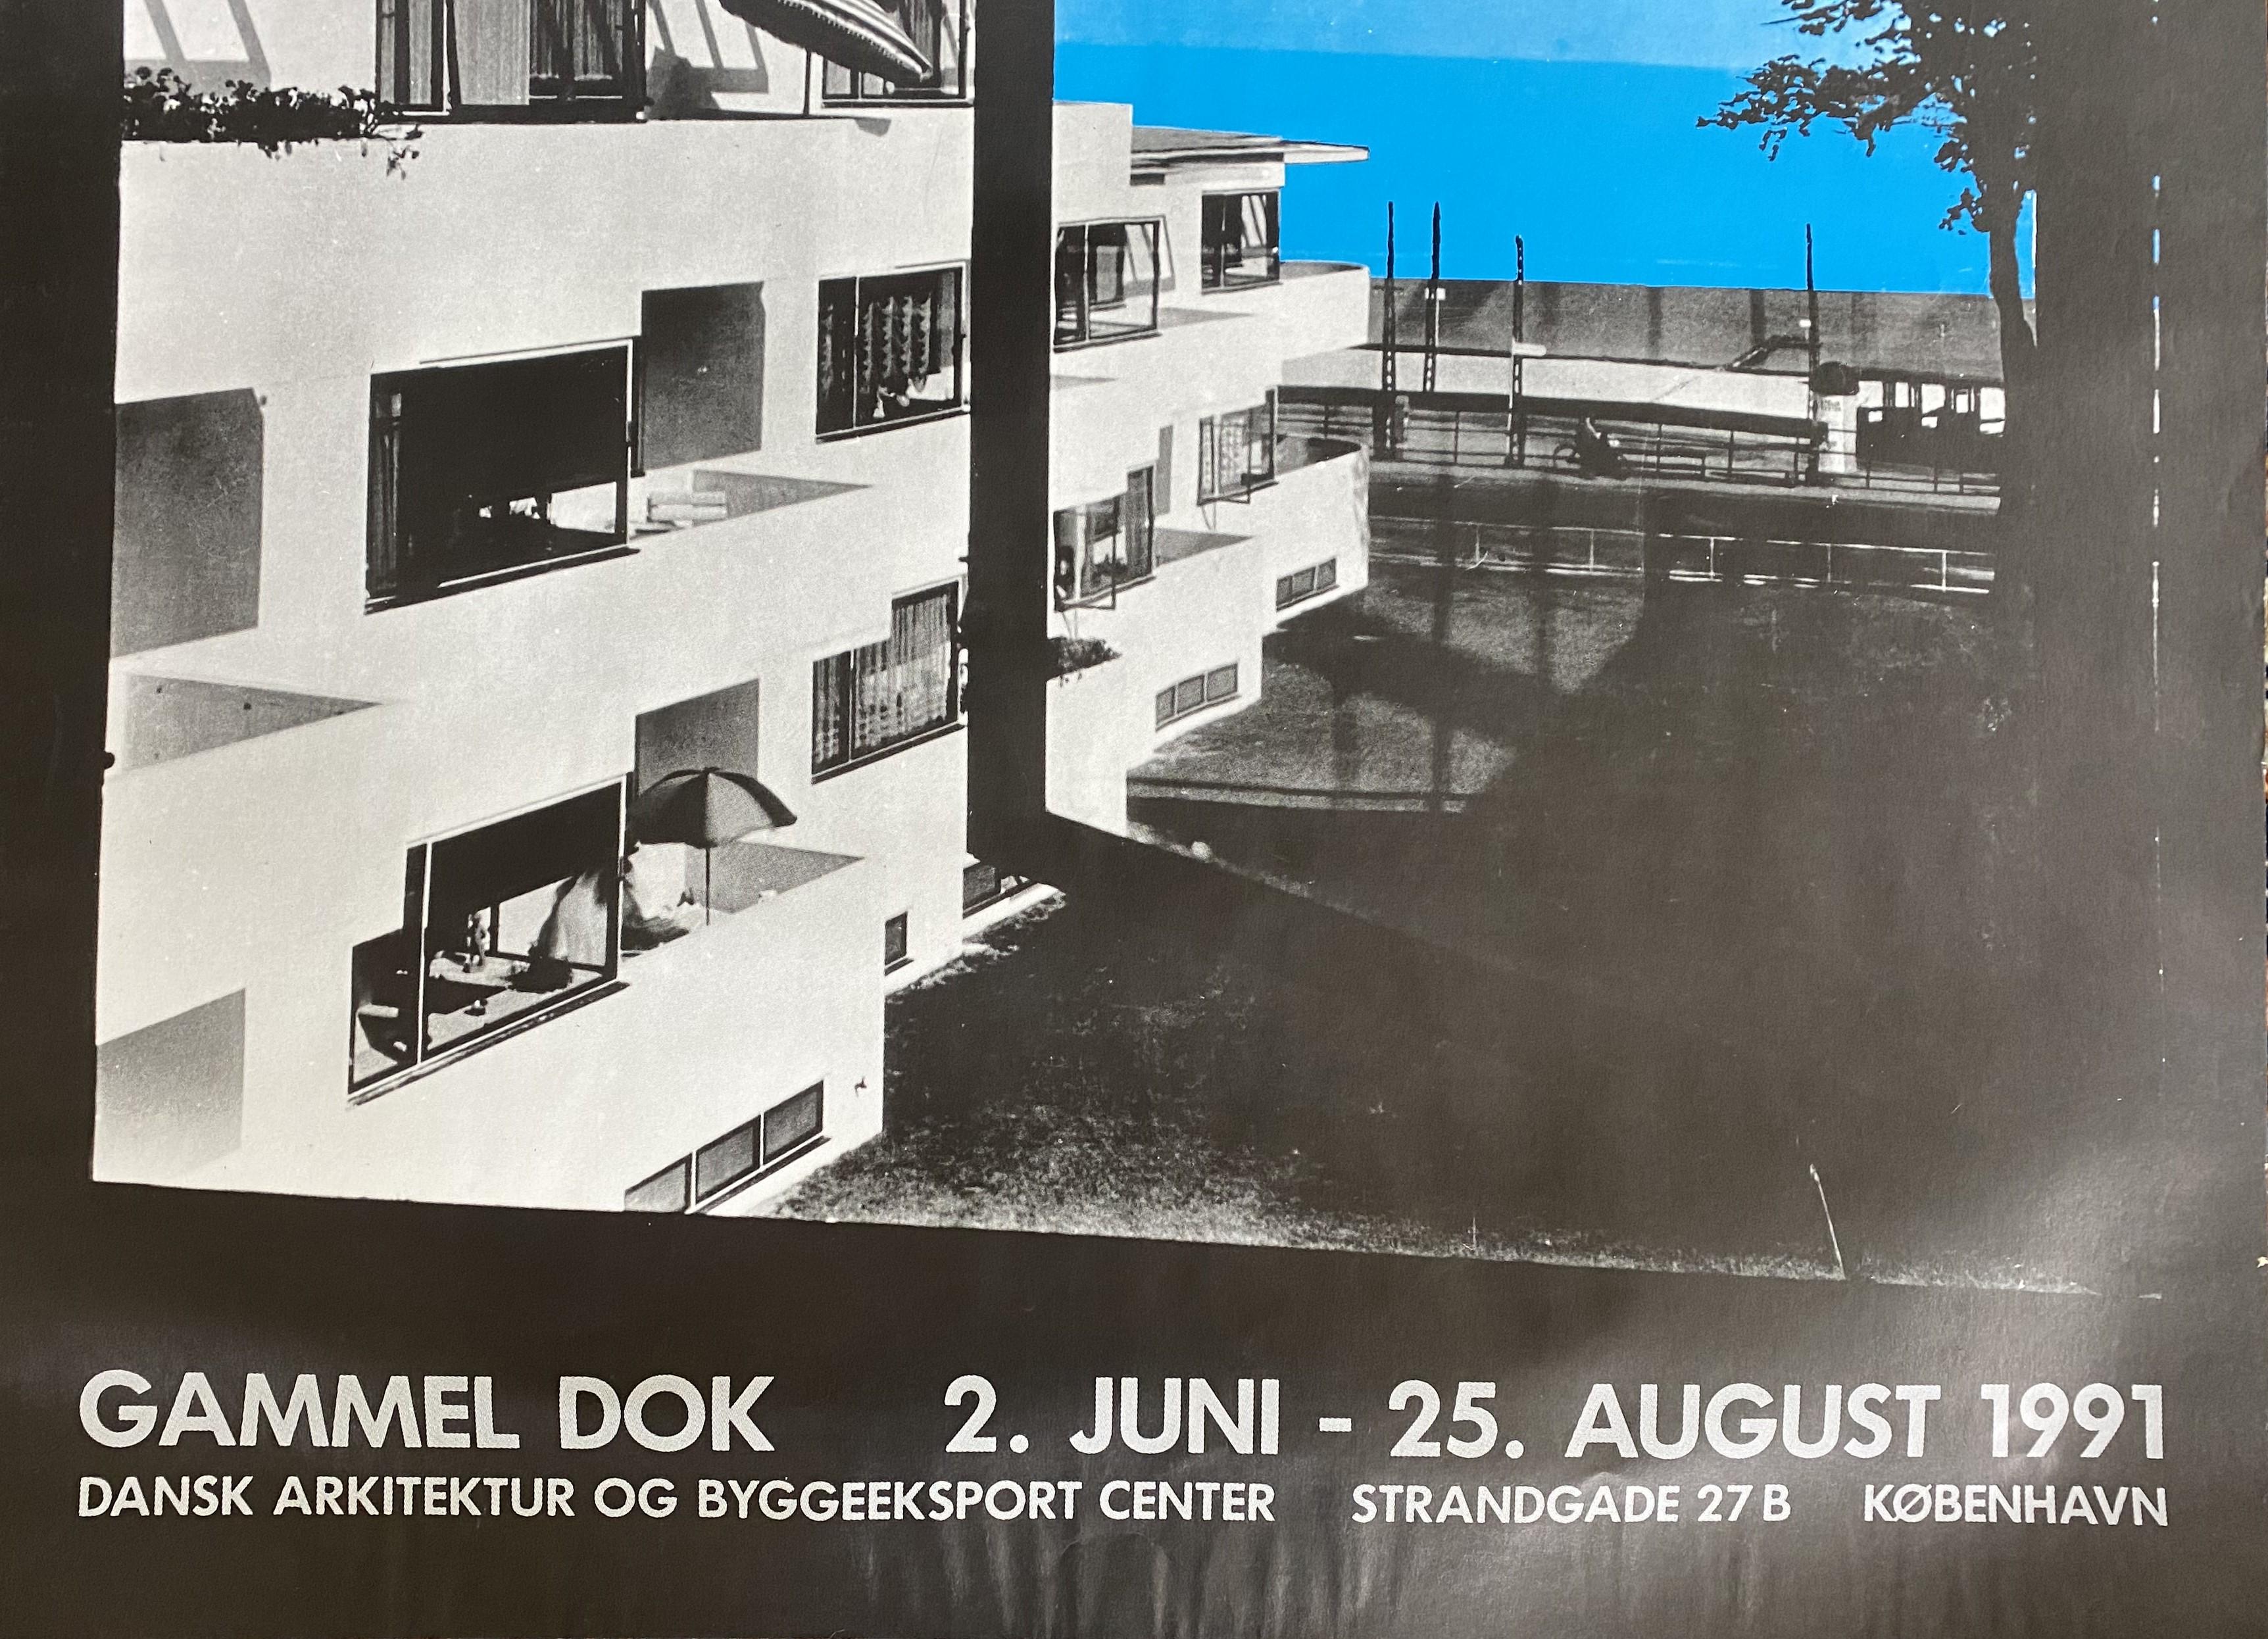 Voici une affiche d'exposition vintage très rare et désirable du designer danois Arne Jacobsen.
L'exposition a eu lieu du 2 juin au 25 août 1991 au Gammel Dok, Dansk Arkitektur Og Byggeesport Center, Copenhague, Danemark.

Arne Jacobsen (danois,